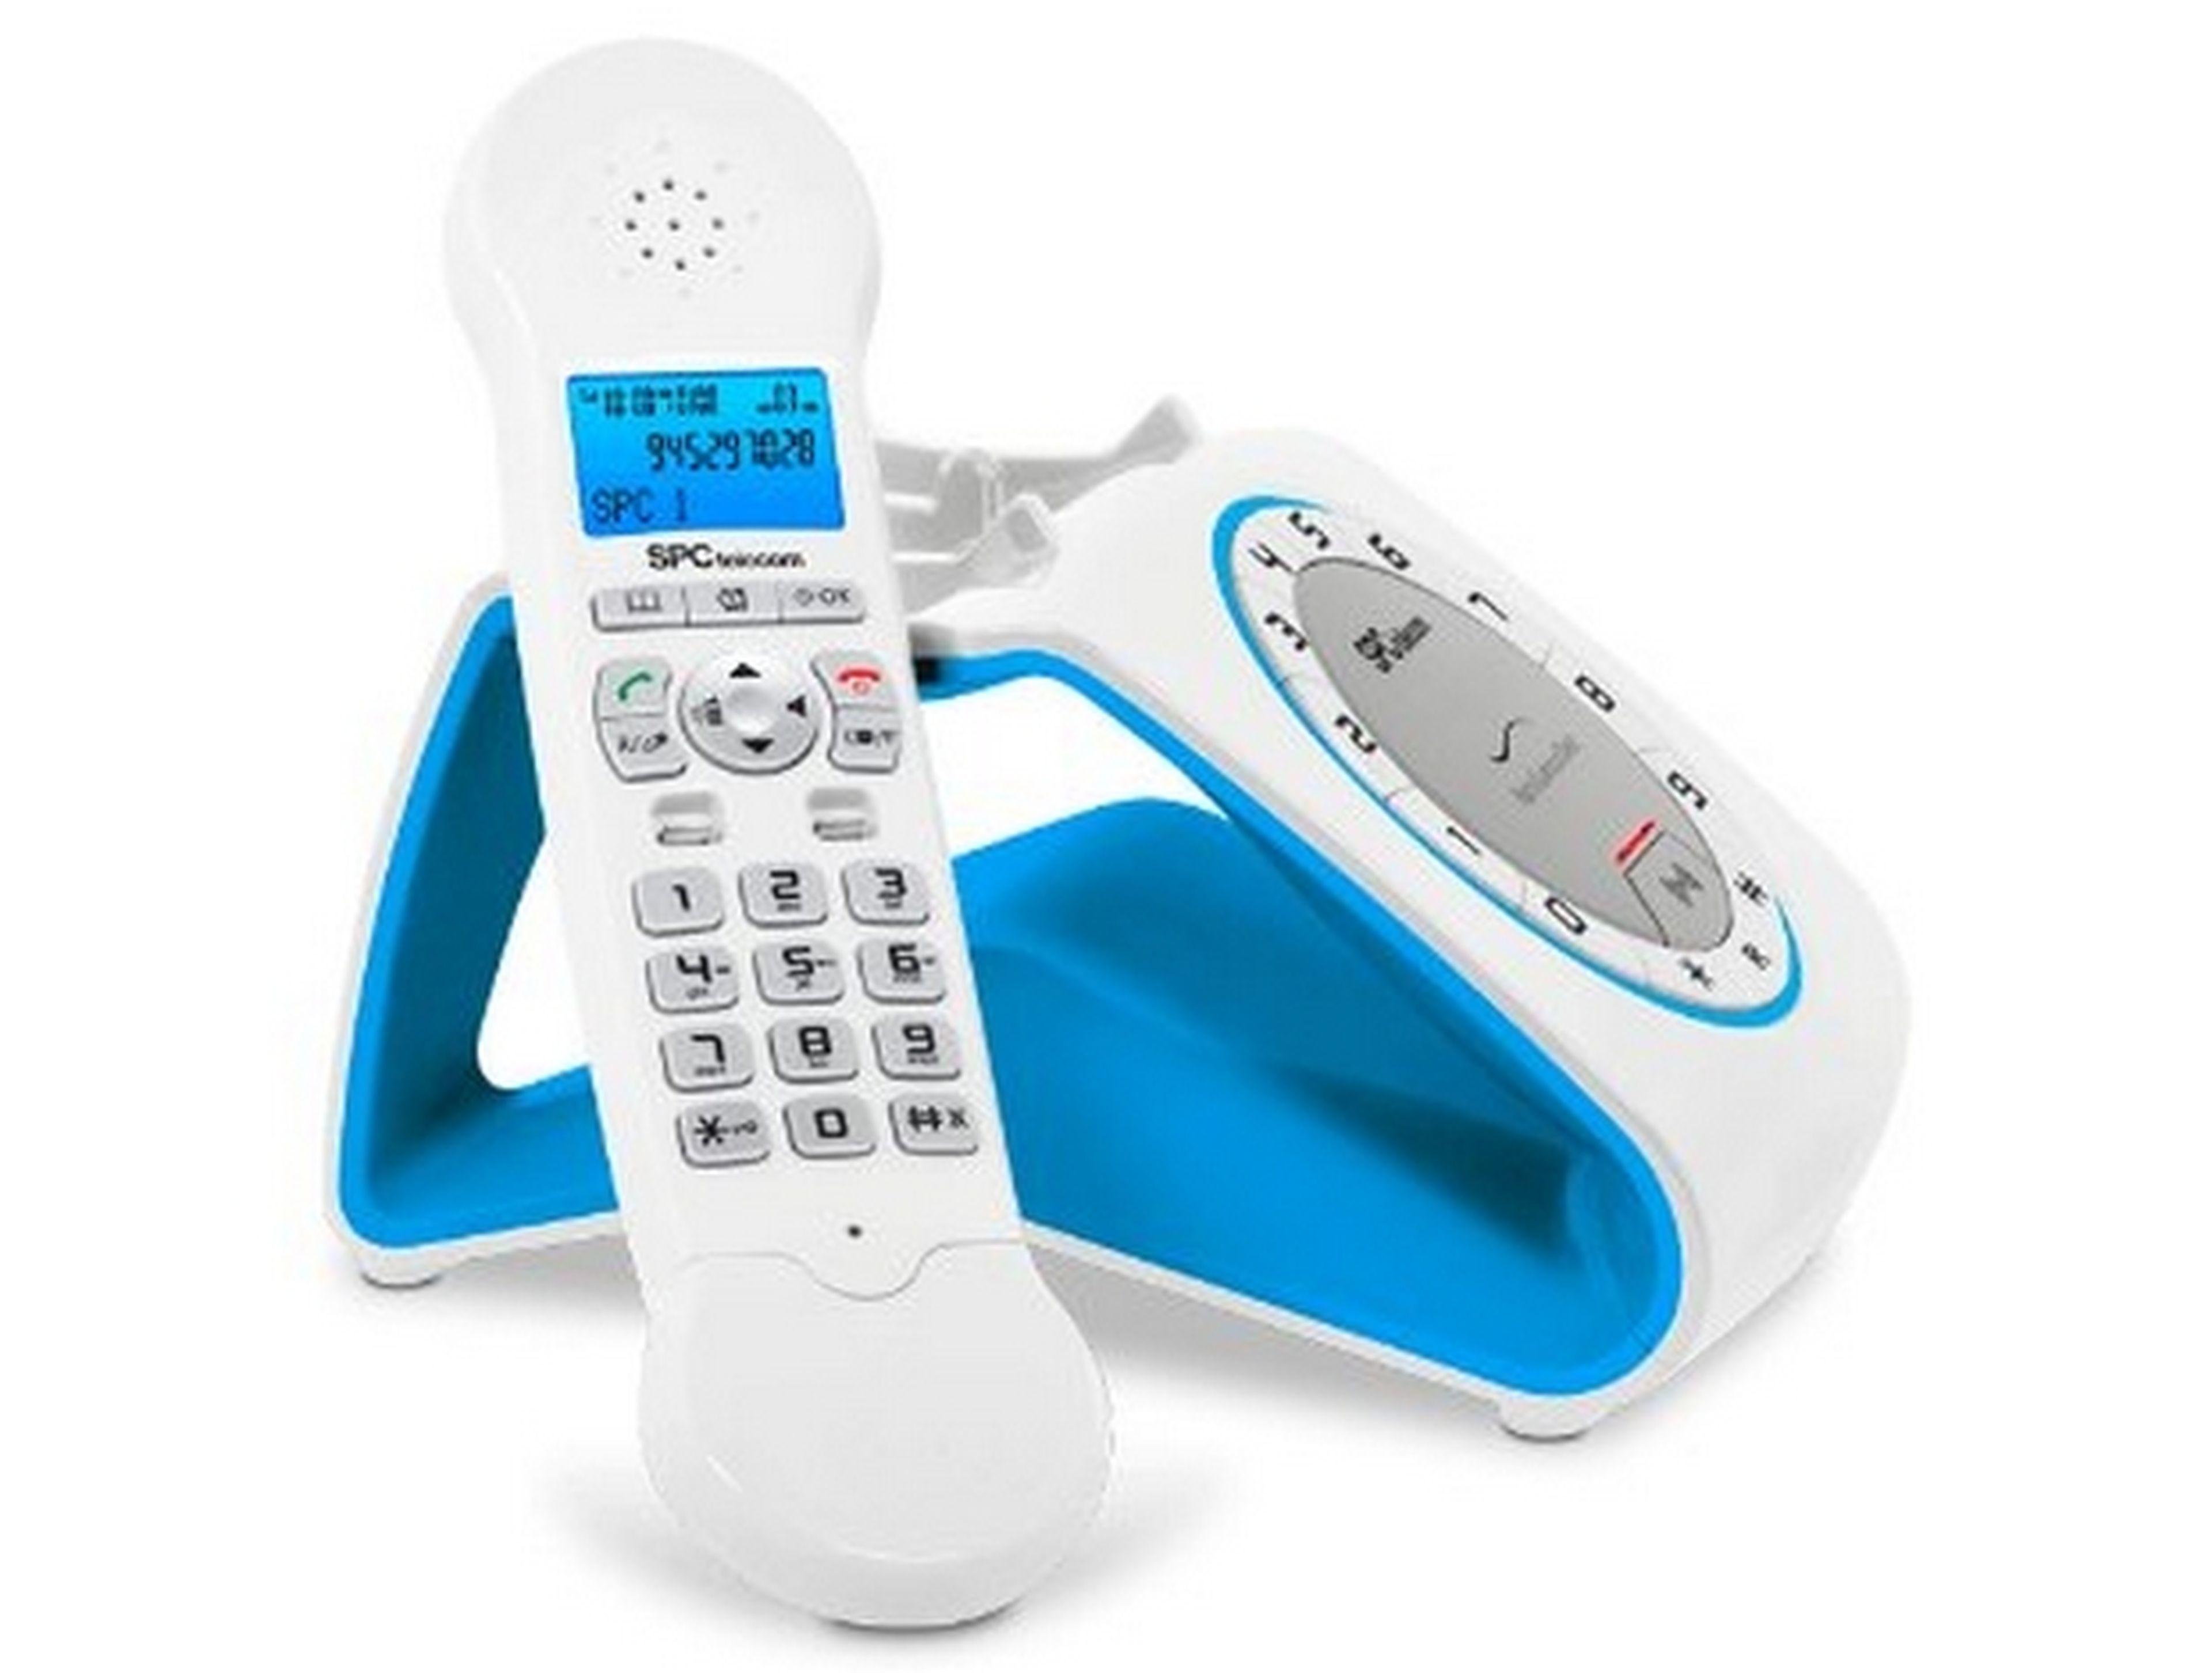 Teléfono inalámbrico teléfonos para el hogar y empresas teléfono